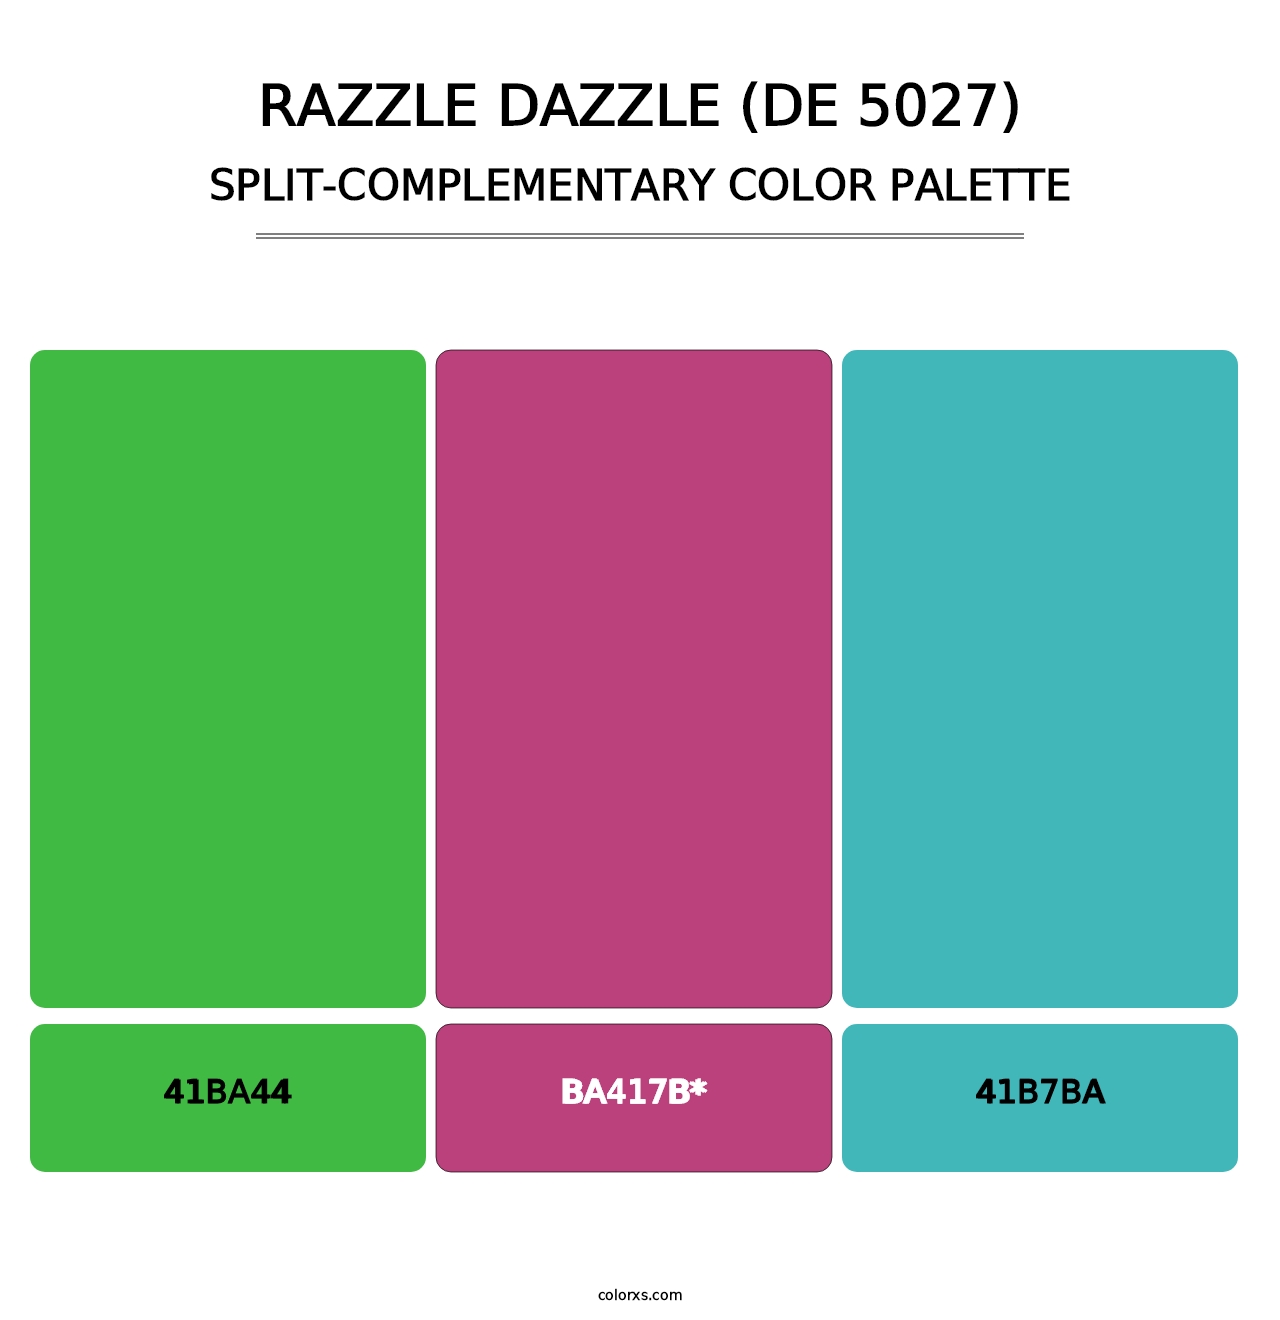 Razzle Dazzle (DE 5027) - Split-Complementary Color Palette